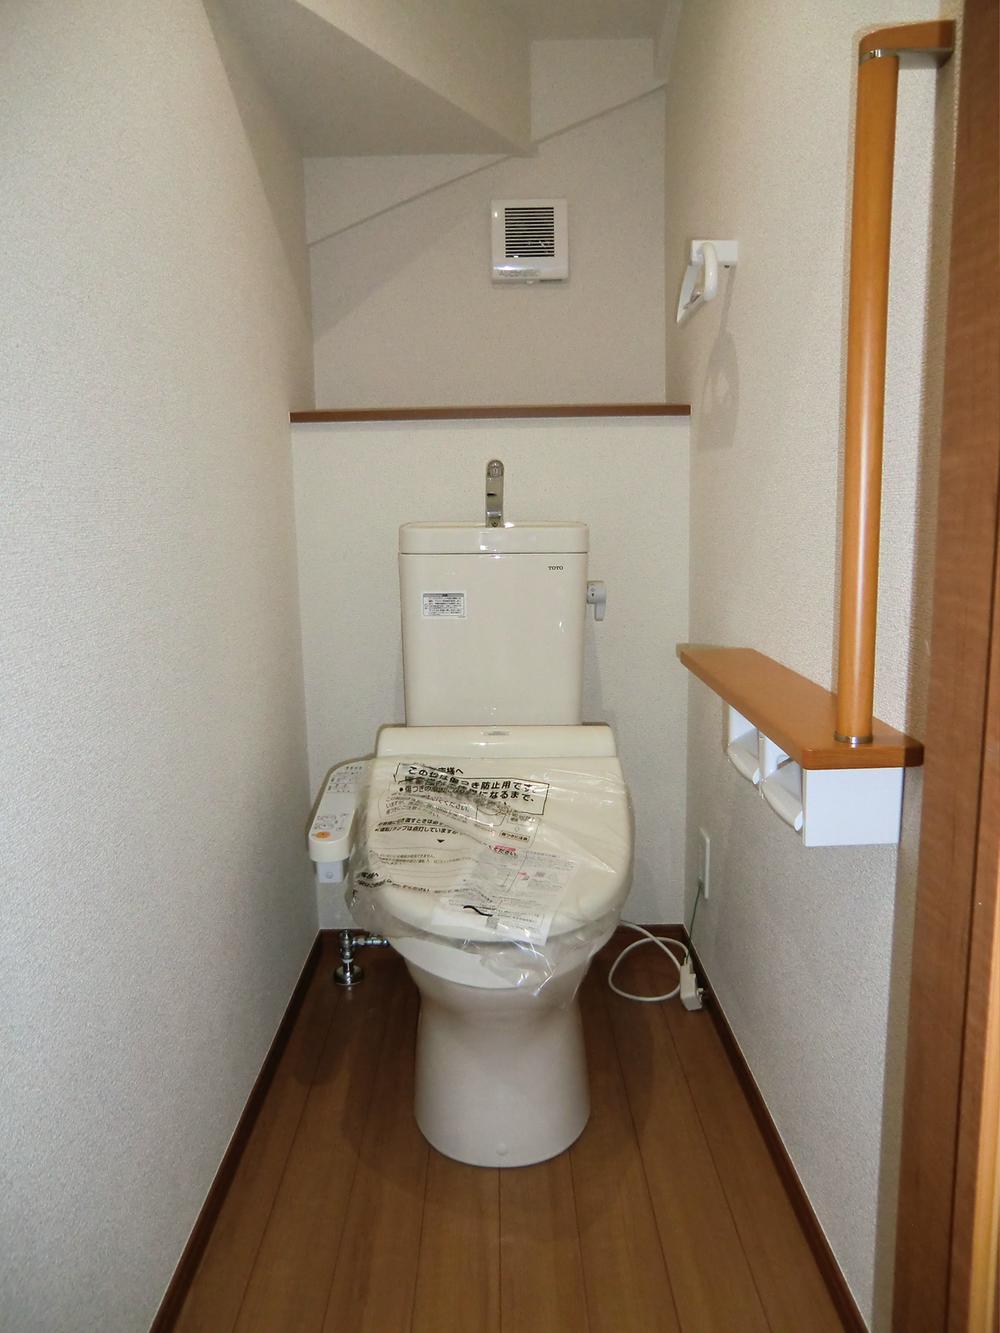 Toilet. ◇ toilet ◇  1st floor ・ Second floor  Bidet  With auto-off function  